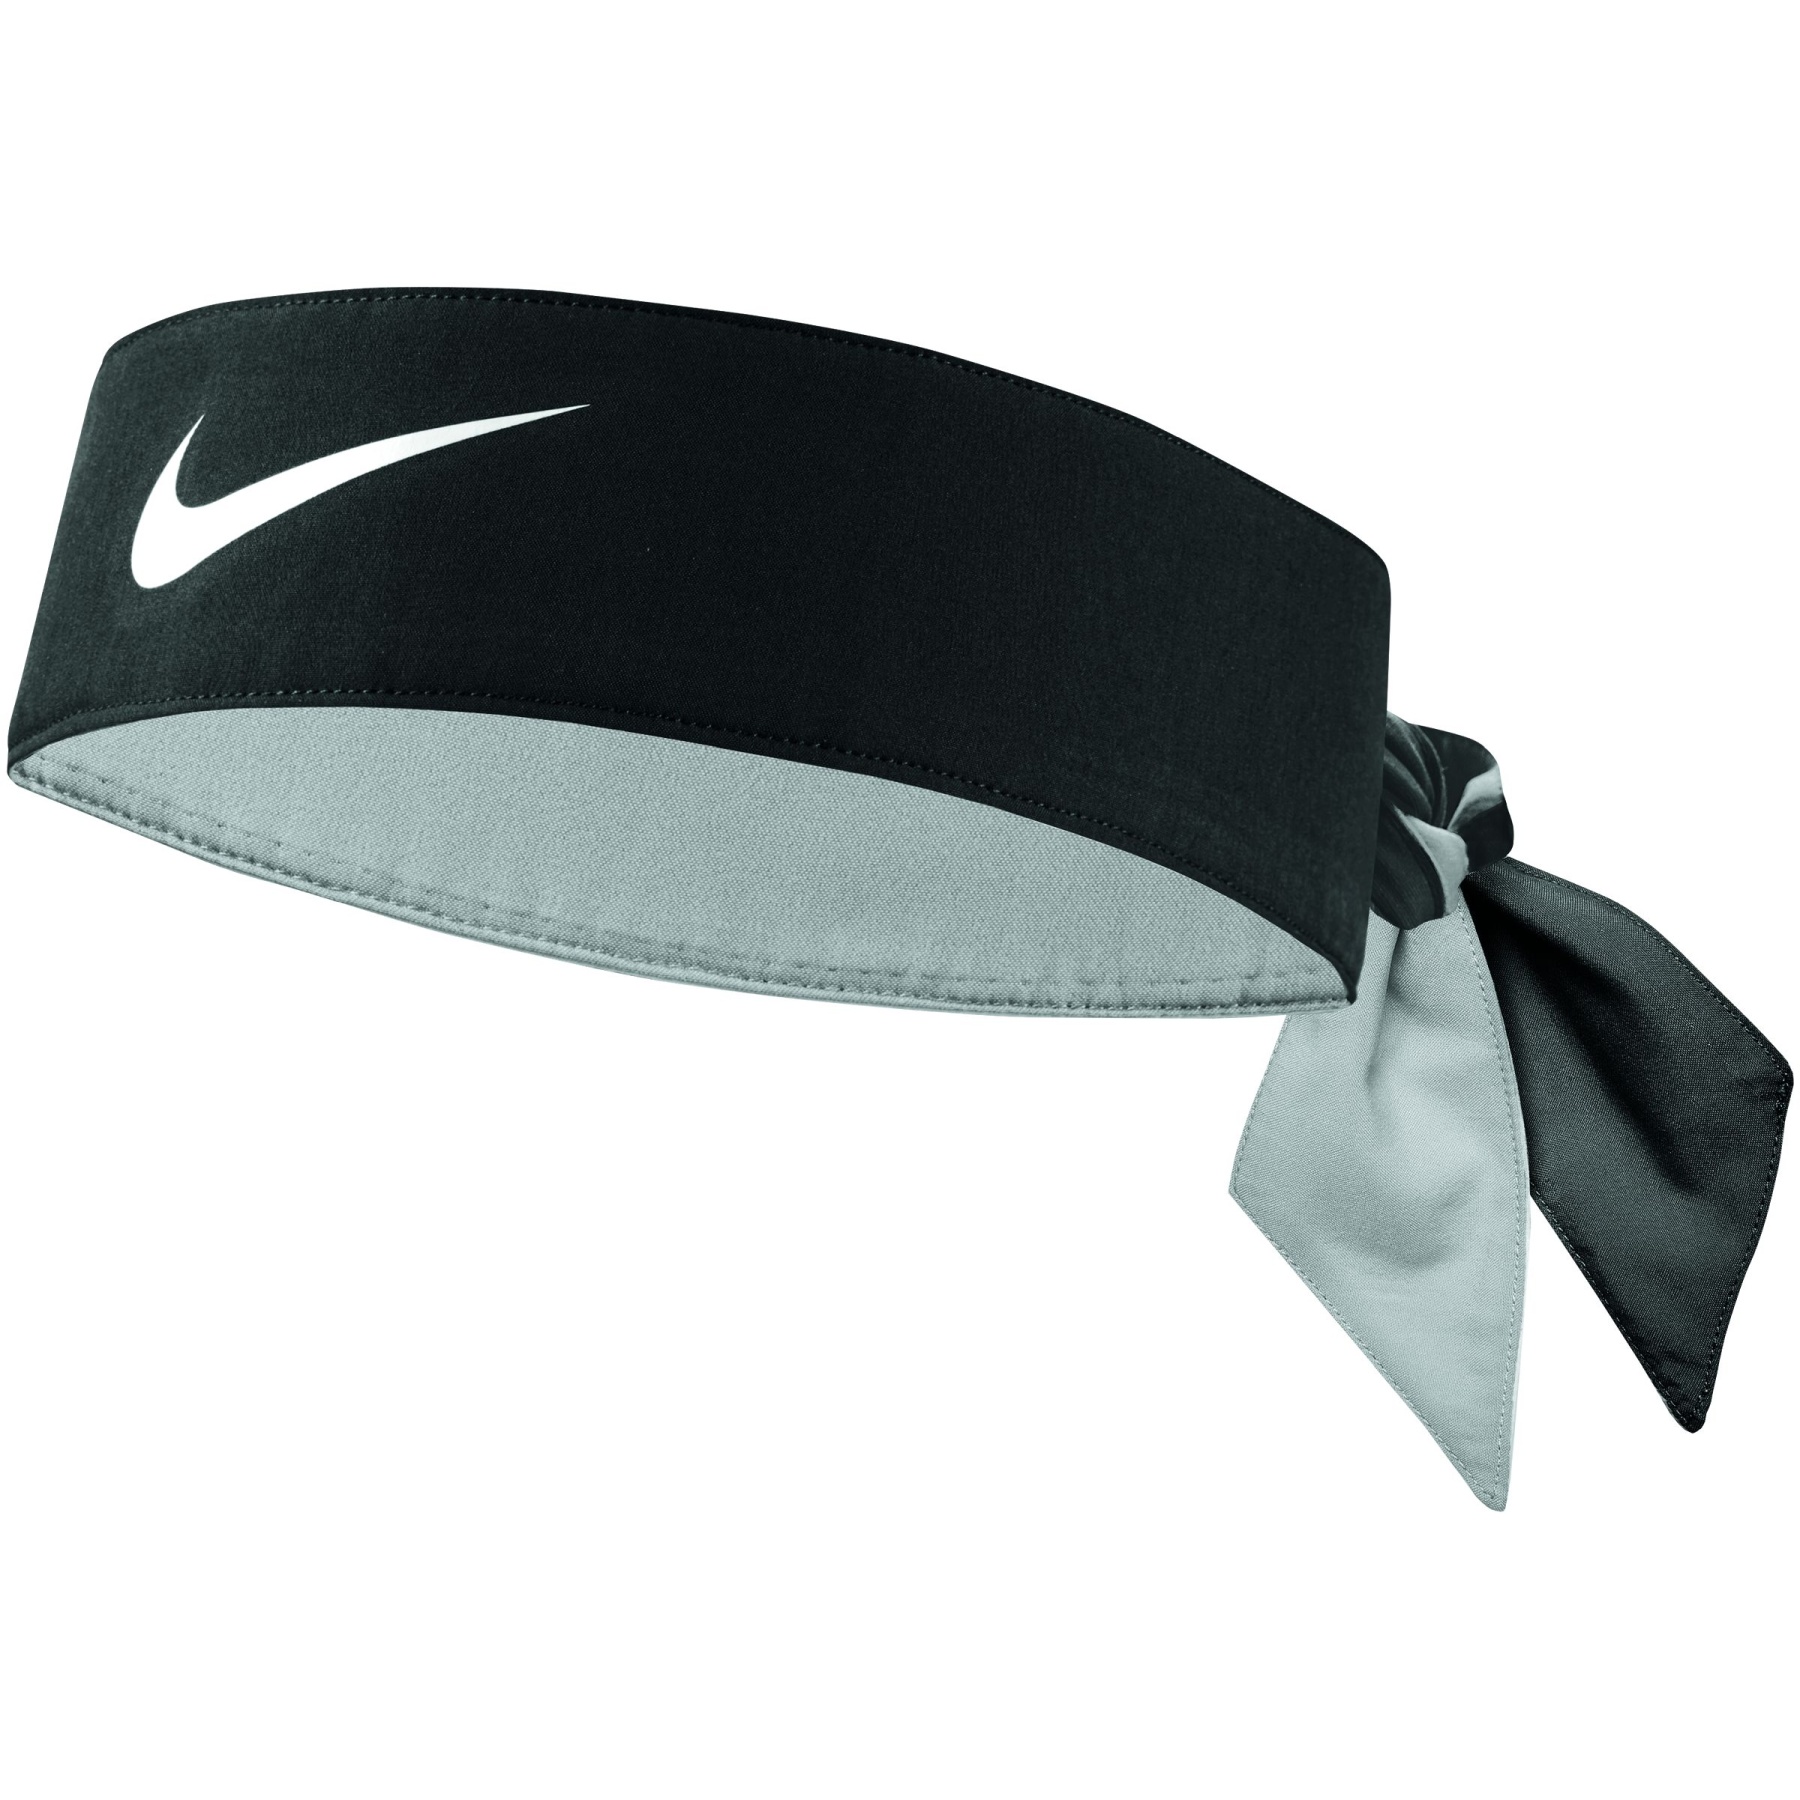 Immagine prodotto da Nike Fascia per la Testa - Tennis Premier - nero/bianco 010